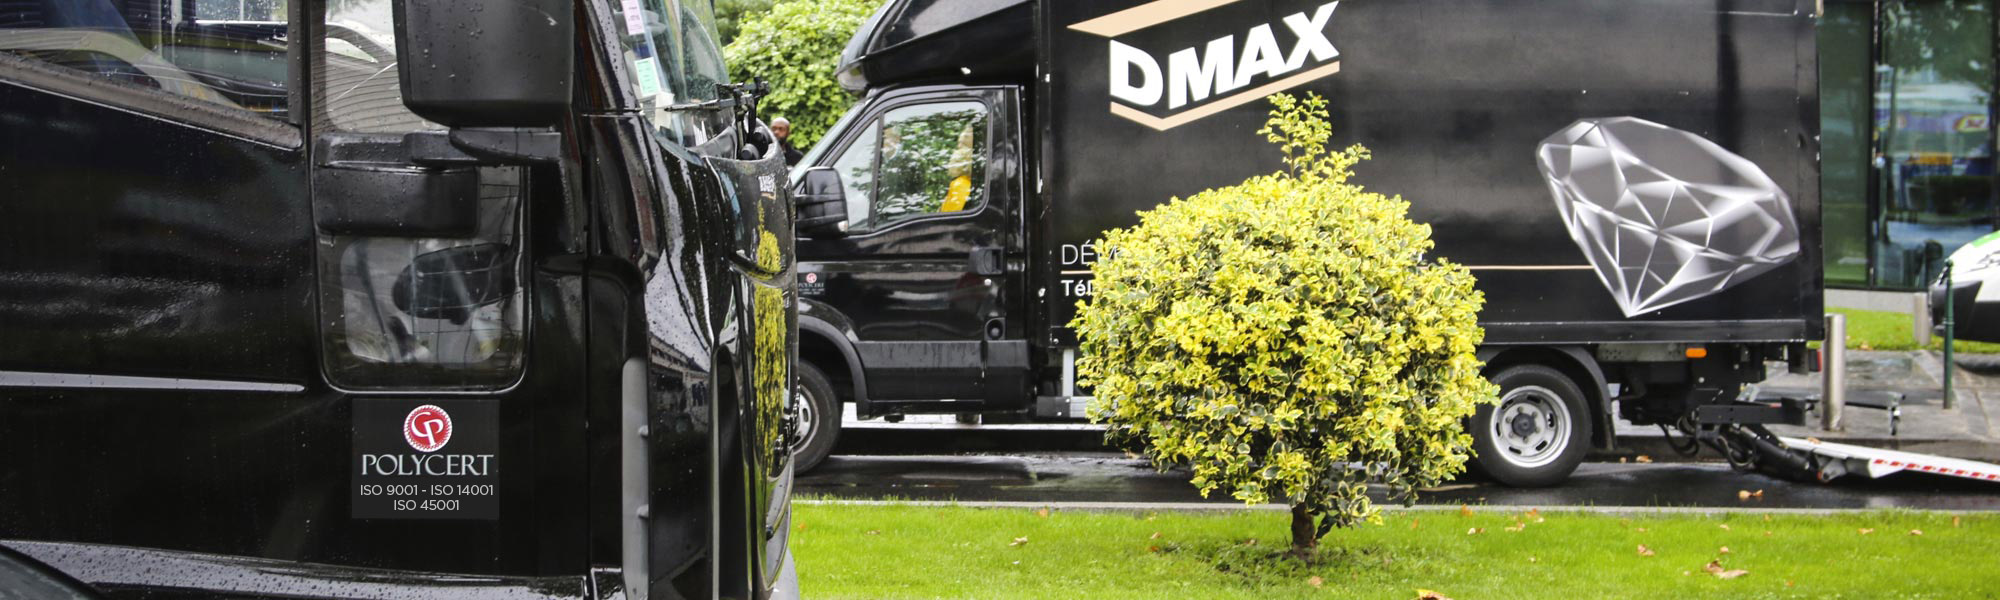 Nuestras ventajas: Certificaciones y garantías Dmax, entreprise de déménagement d'entreprise et particulier